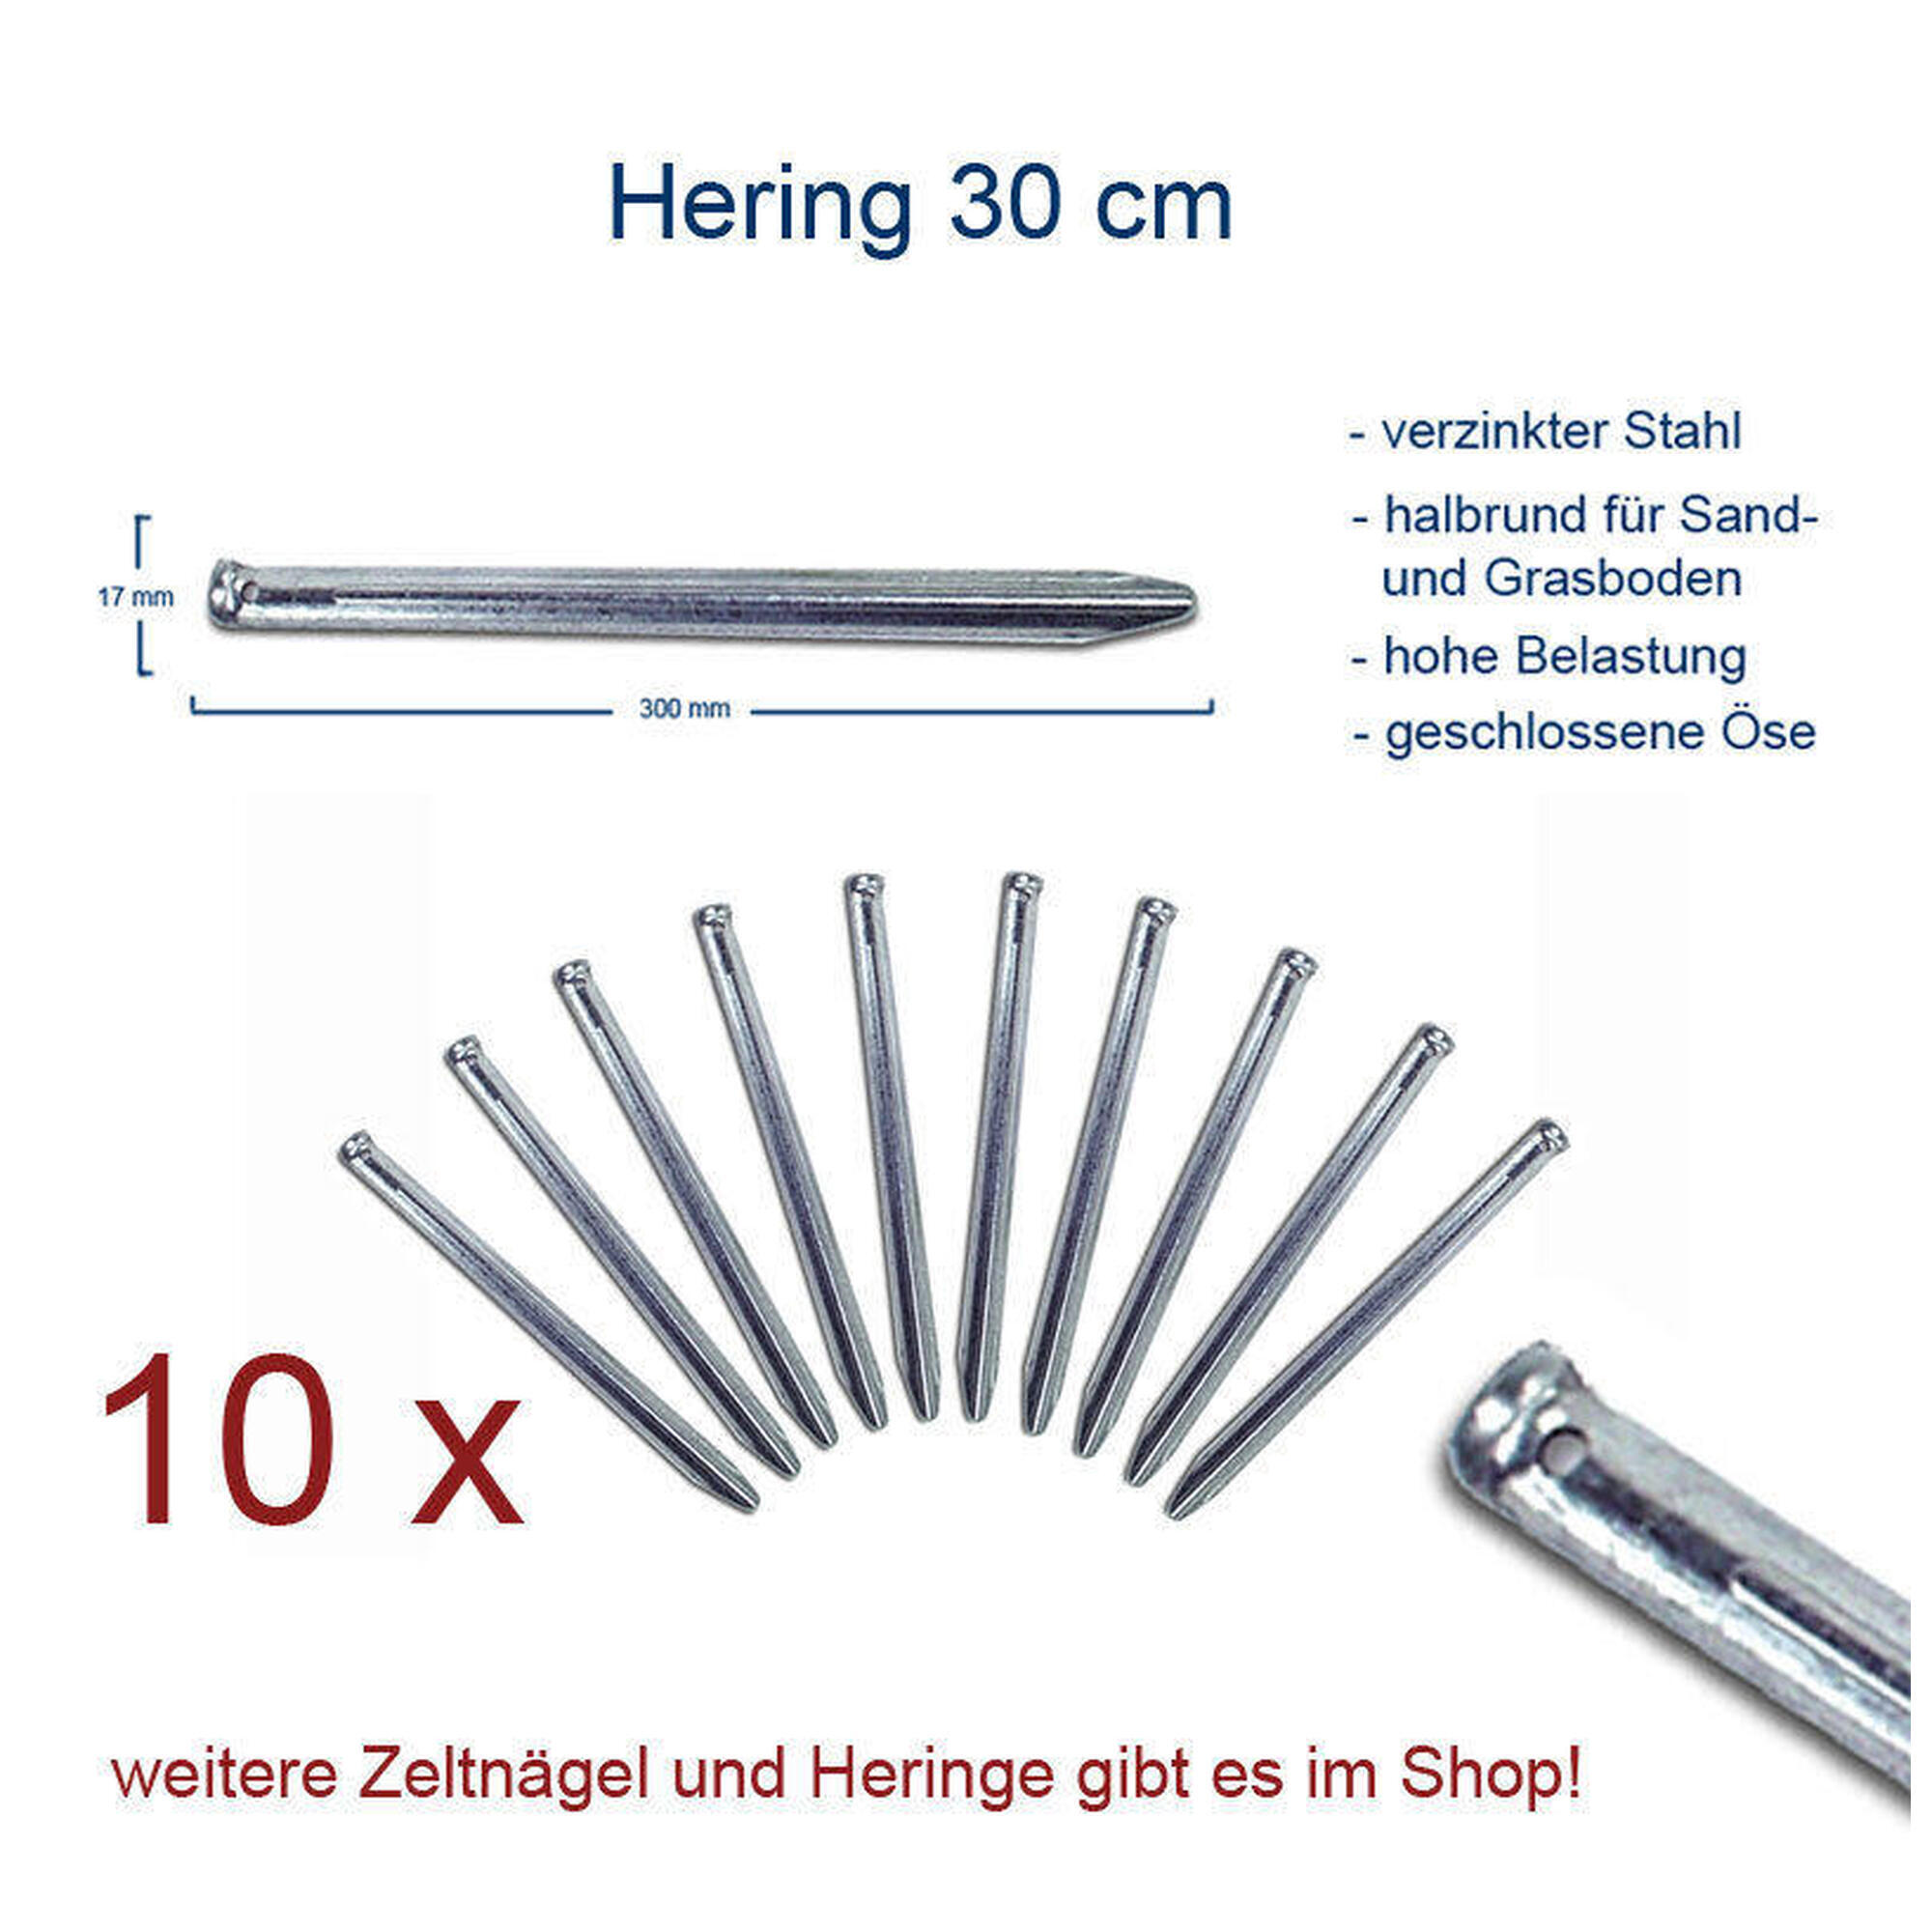 10 x Hering 30 cm Zeltnagel Zelt Heringe Erdnagel Gras & Sand Stahl verzinkt